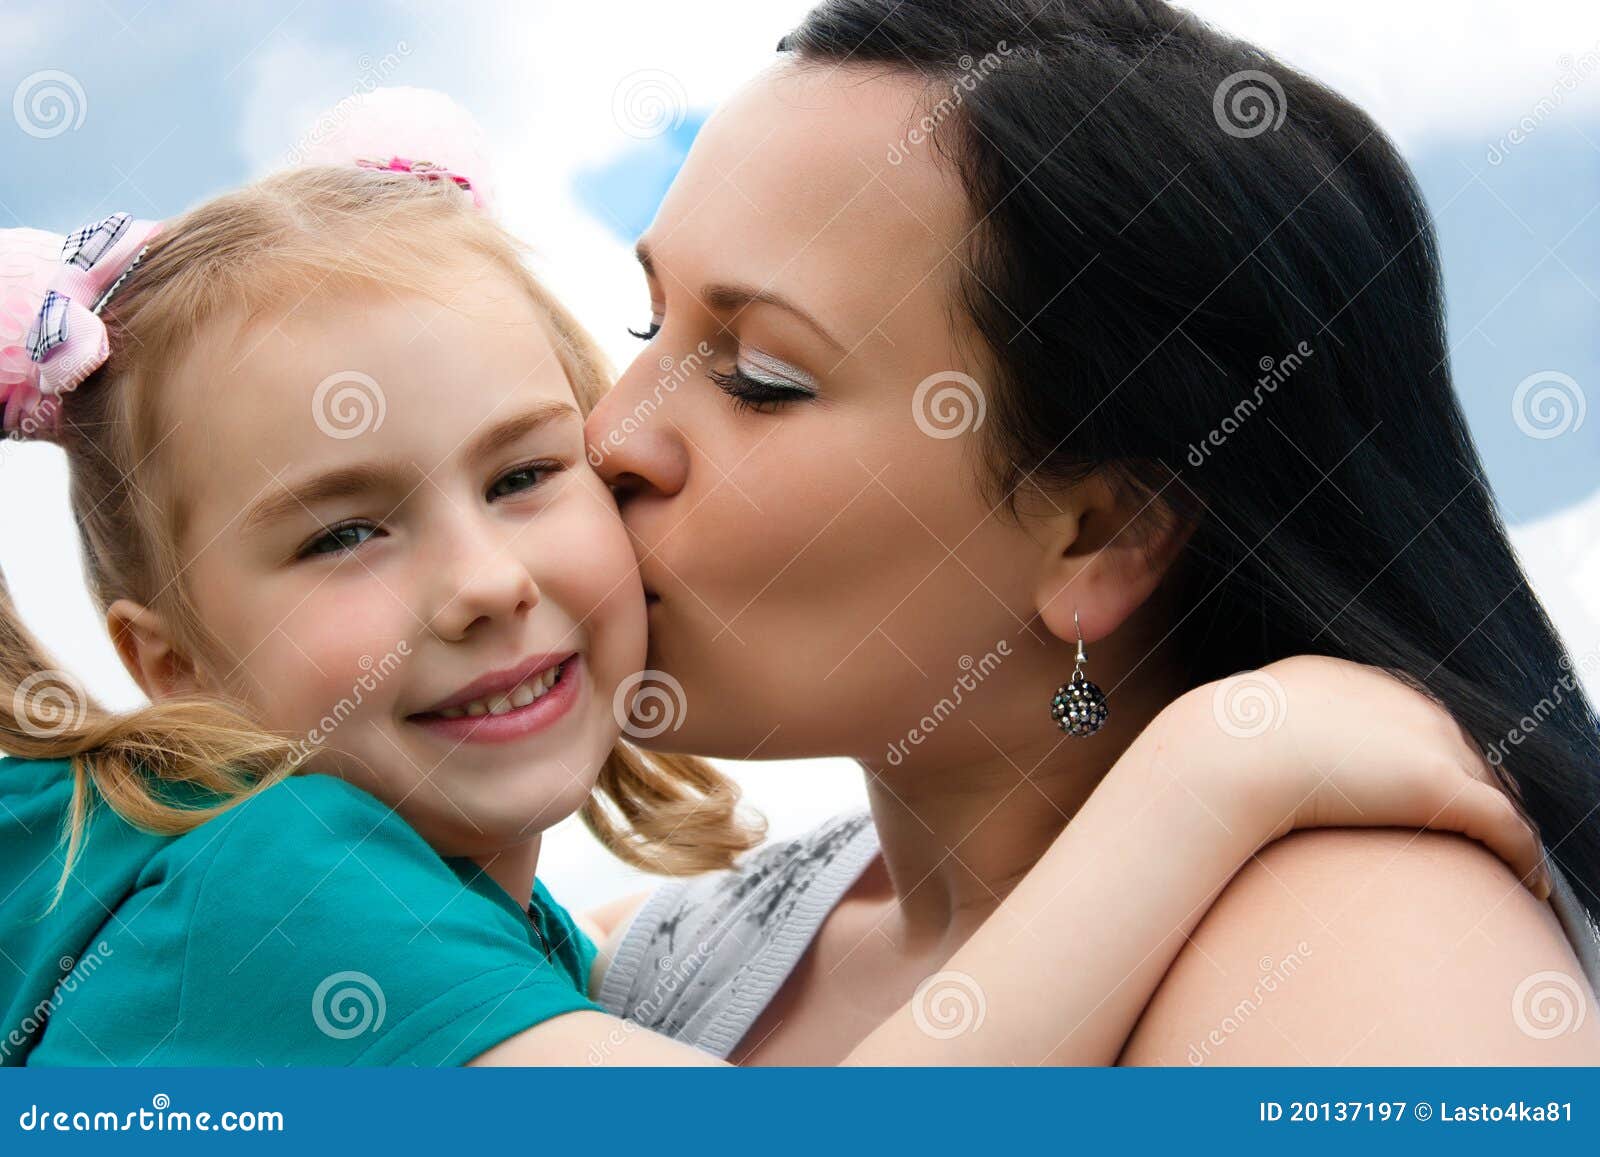 母亲亲吻她的女儿 库存图片. 图片 包括有 本质, 母性, 幸福, 亲吻, 快乐, 童年, 敬慕, 父项 - 73896375